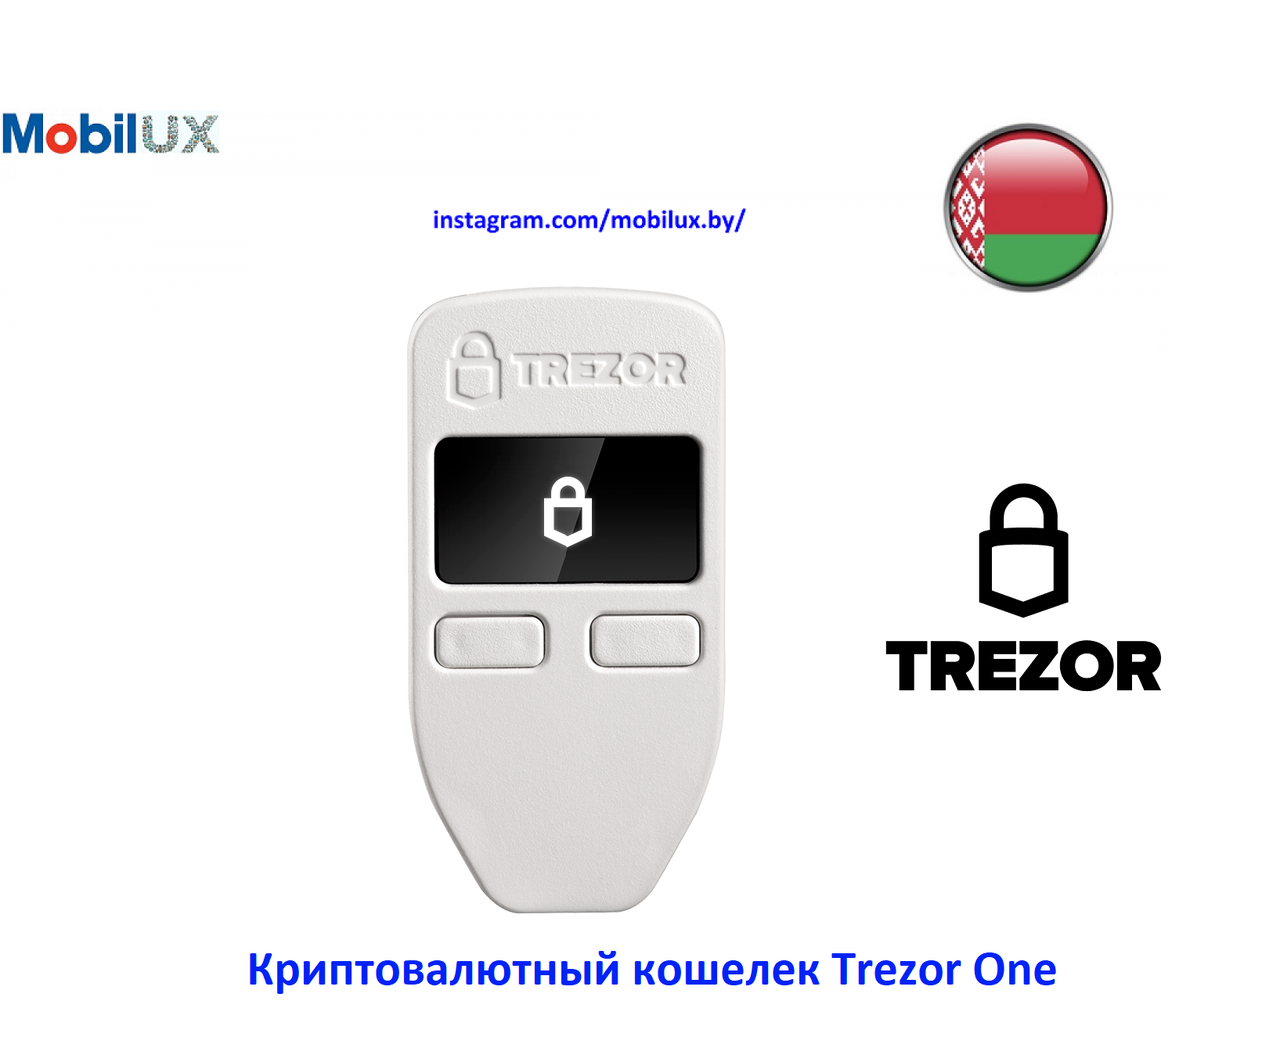 Криптовалютный кошелек Trezor One